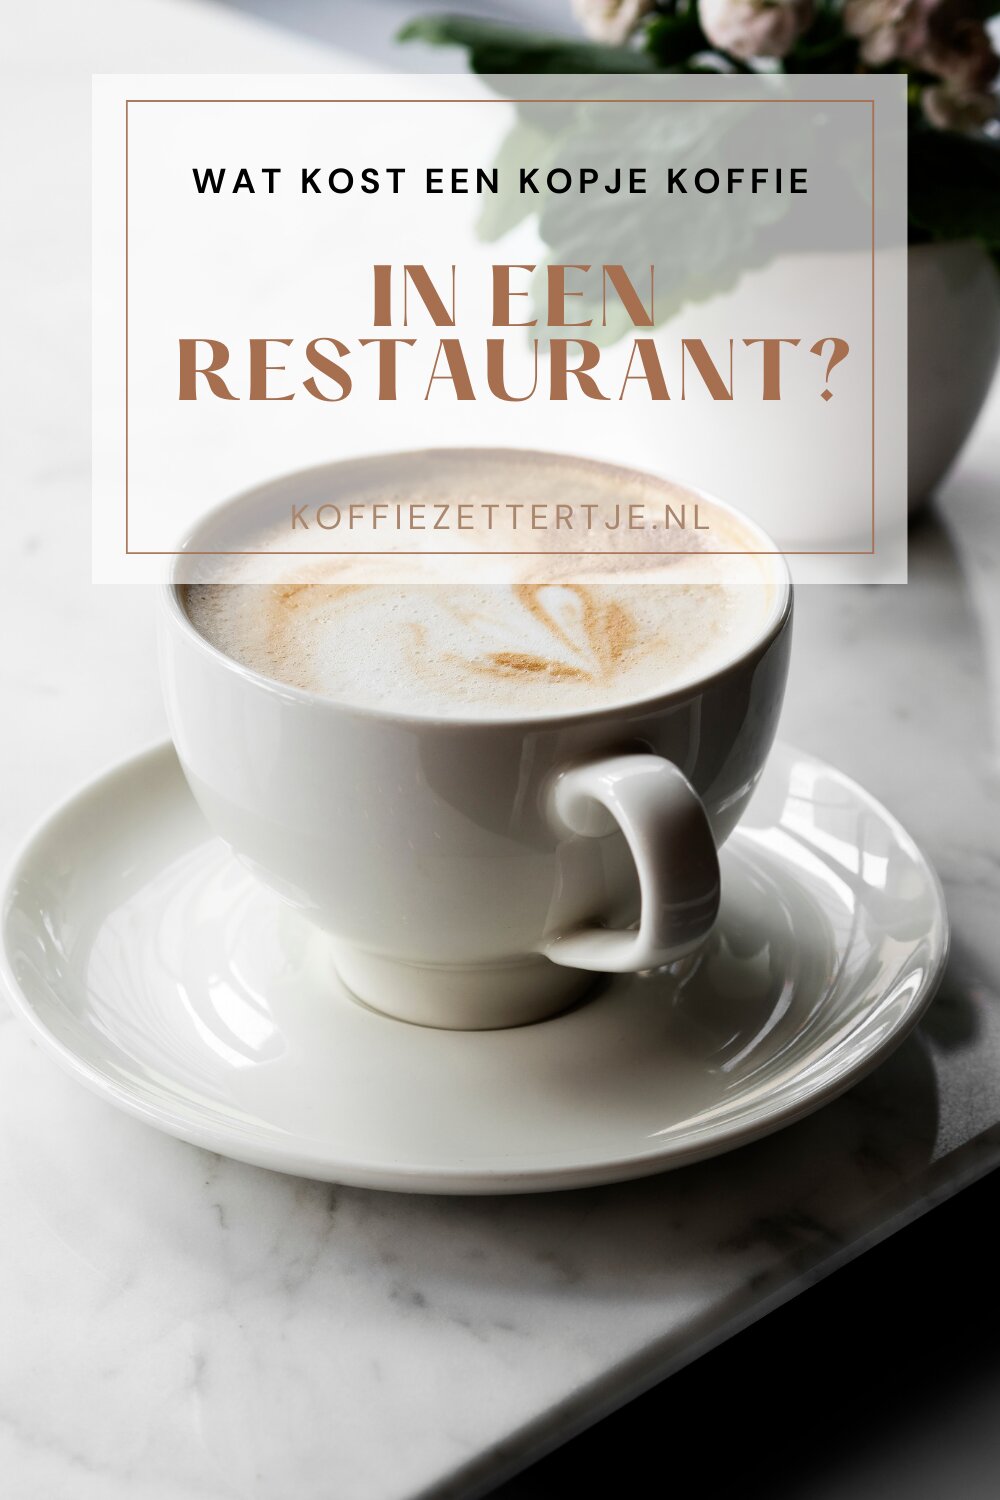 wat kost een kopje koffie in een restaurant?